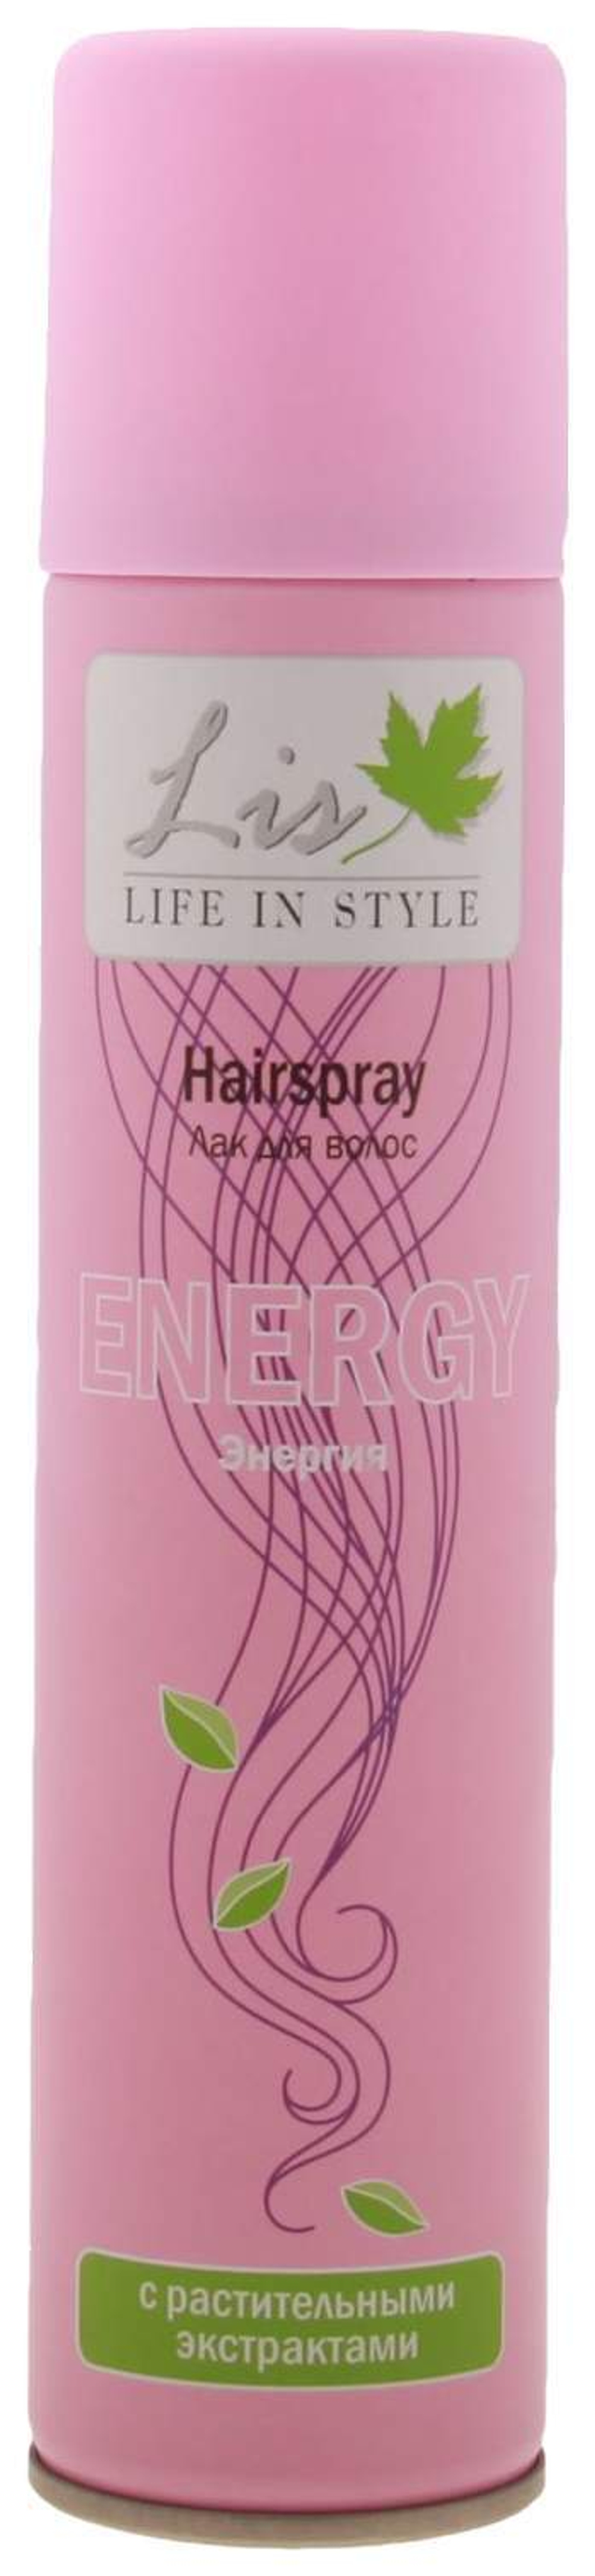 Lis Лак для волос Энергия, с растительными экстрактами, очень сильная фиксация, 200 мл